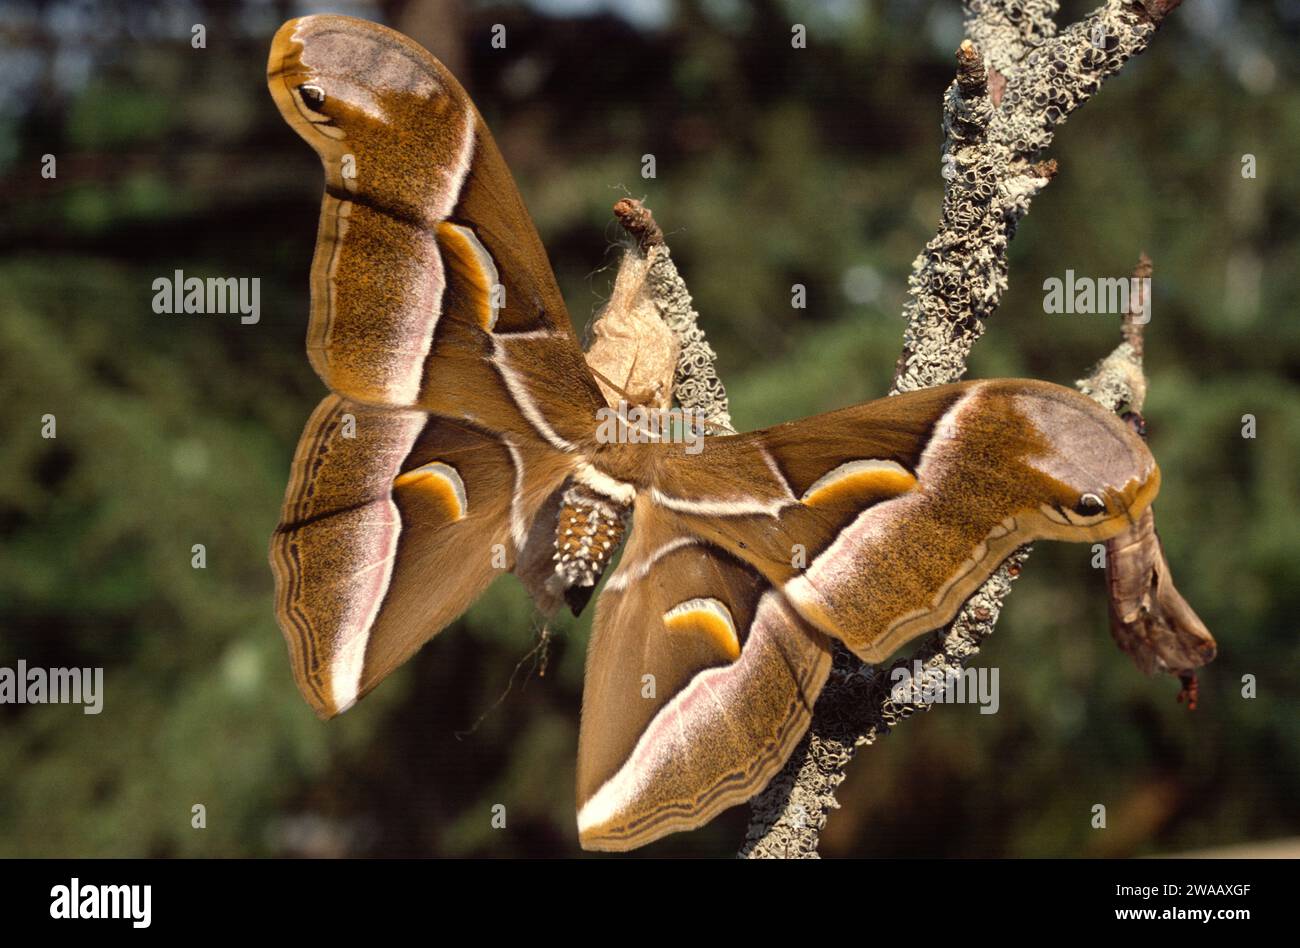 Ailanthus silkmoth (Samia cynthia) è amoth nativo di Cina e Corea. Adulto appena fuori dalla pupa. Foto Stock